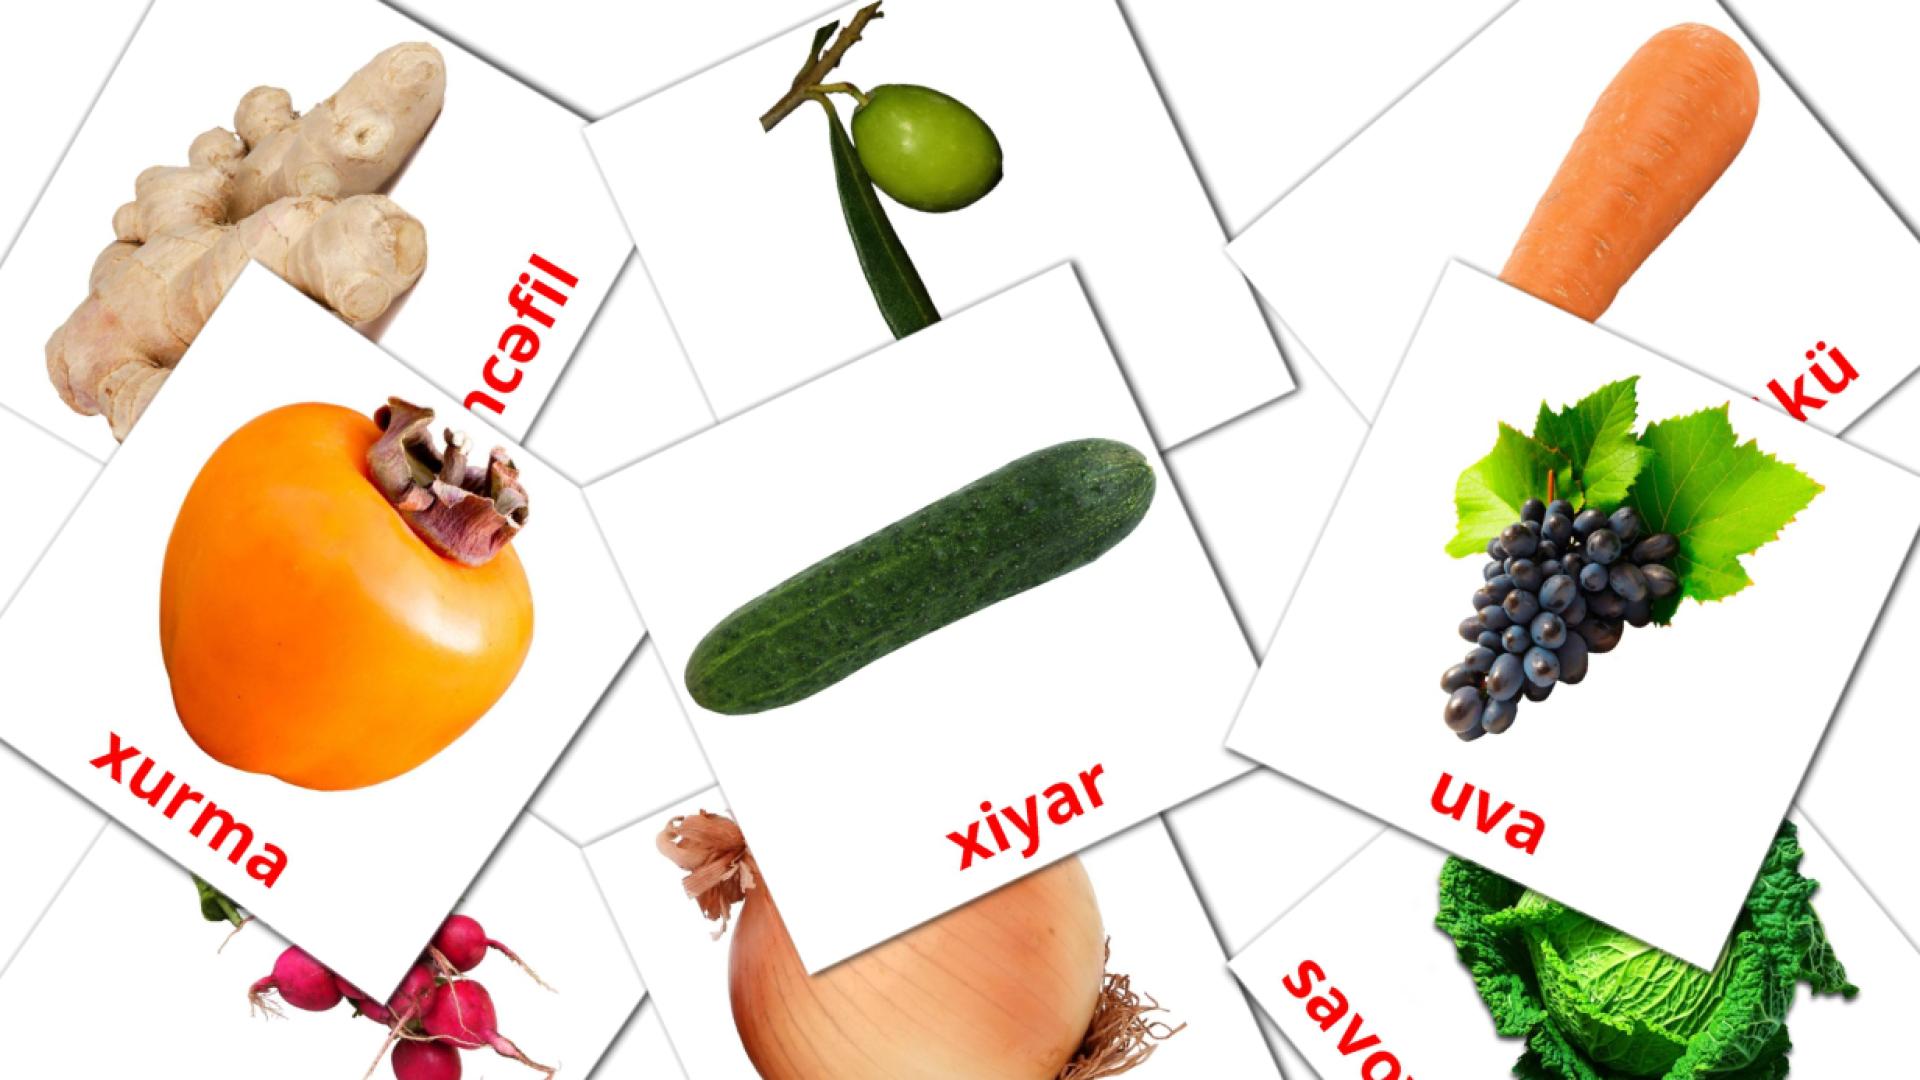 Giləmeyvə azerbaijani vocabulary flashcards